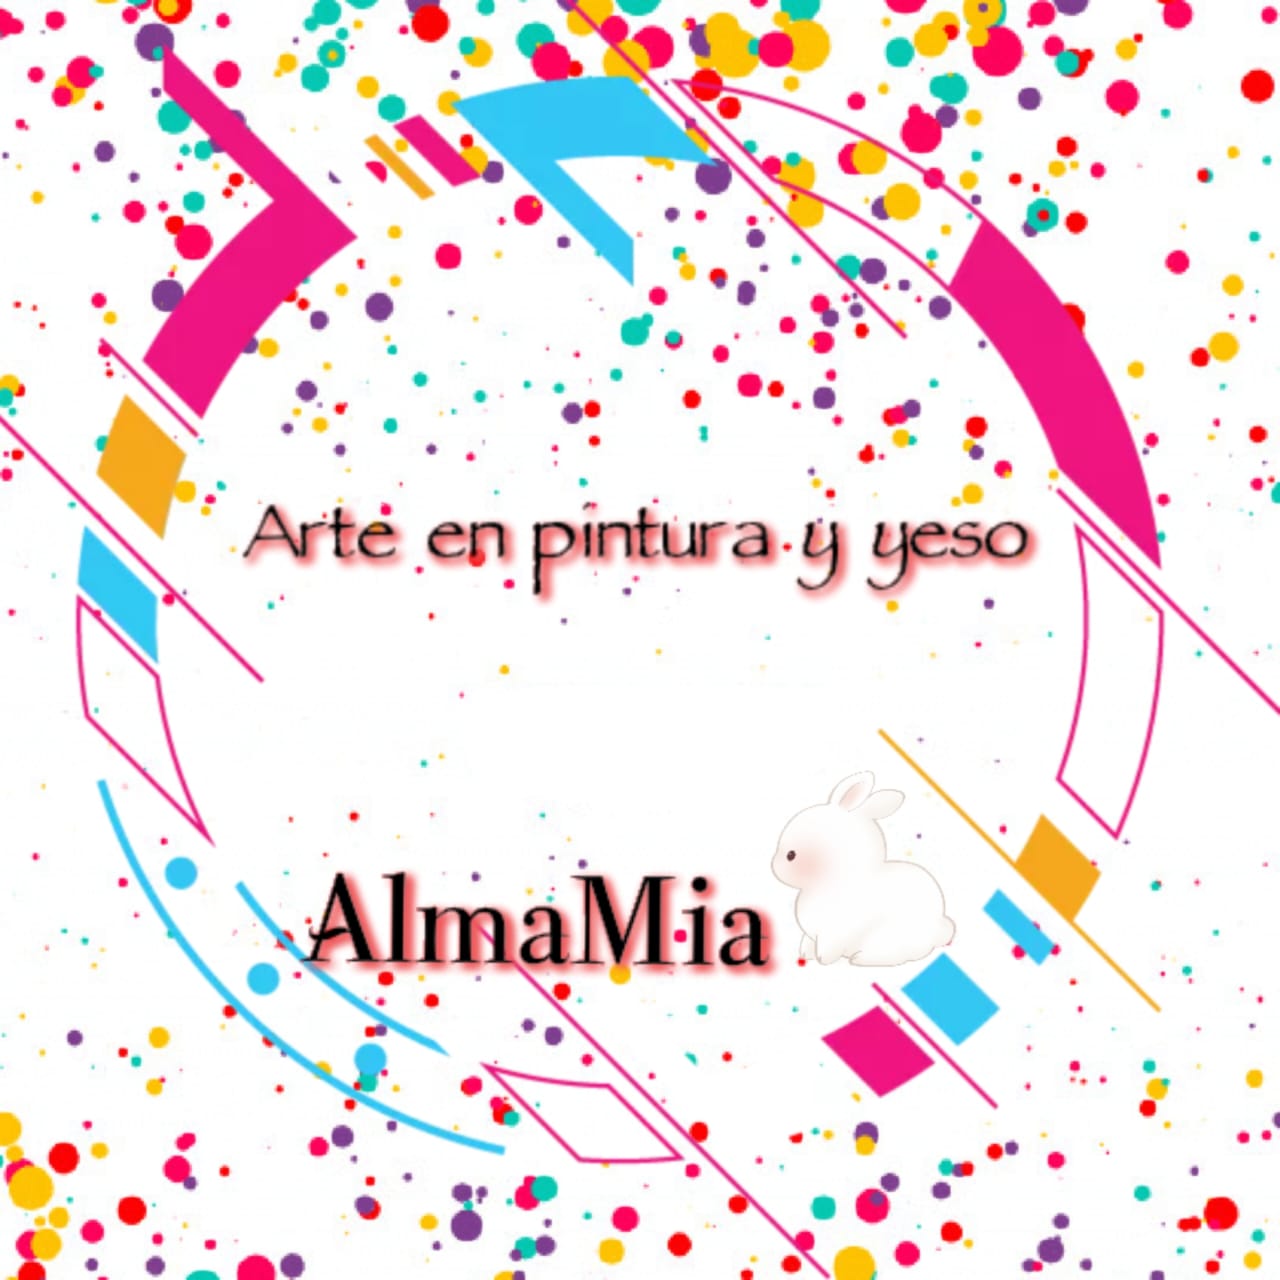 AlmaMia